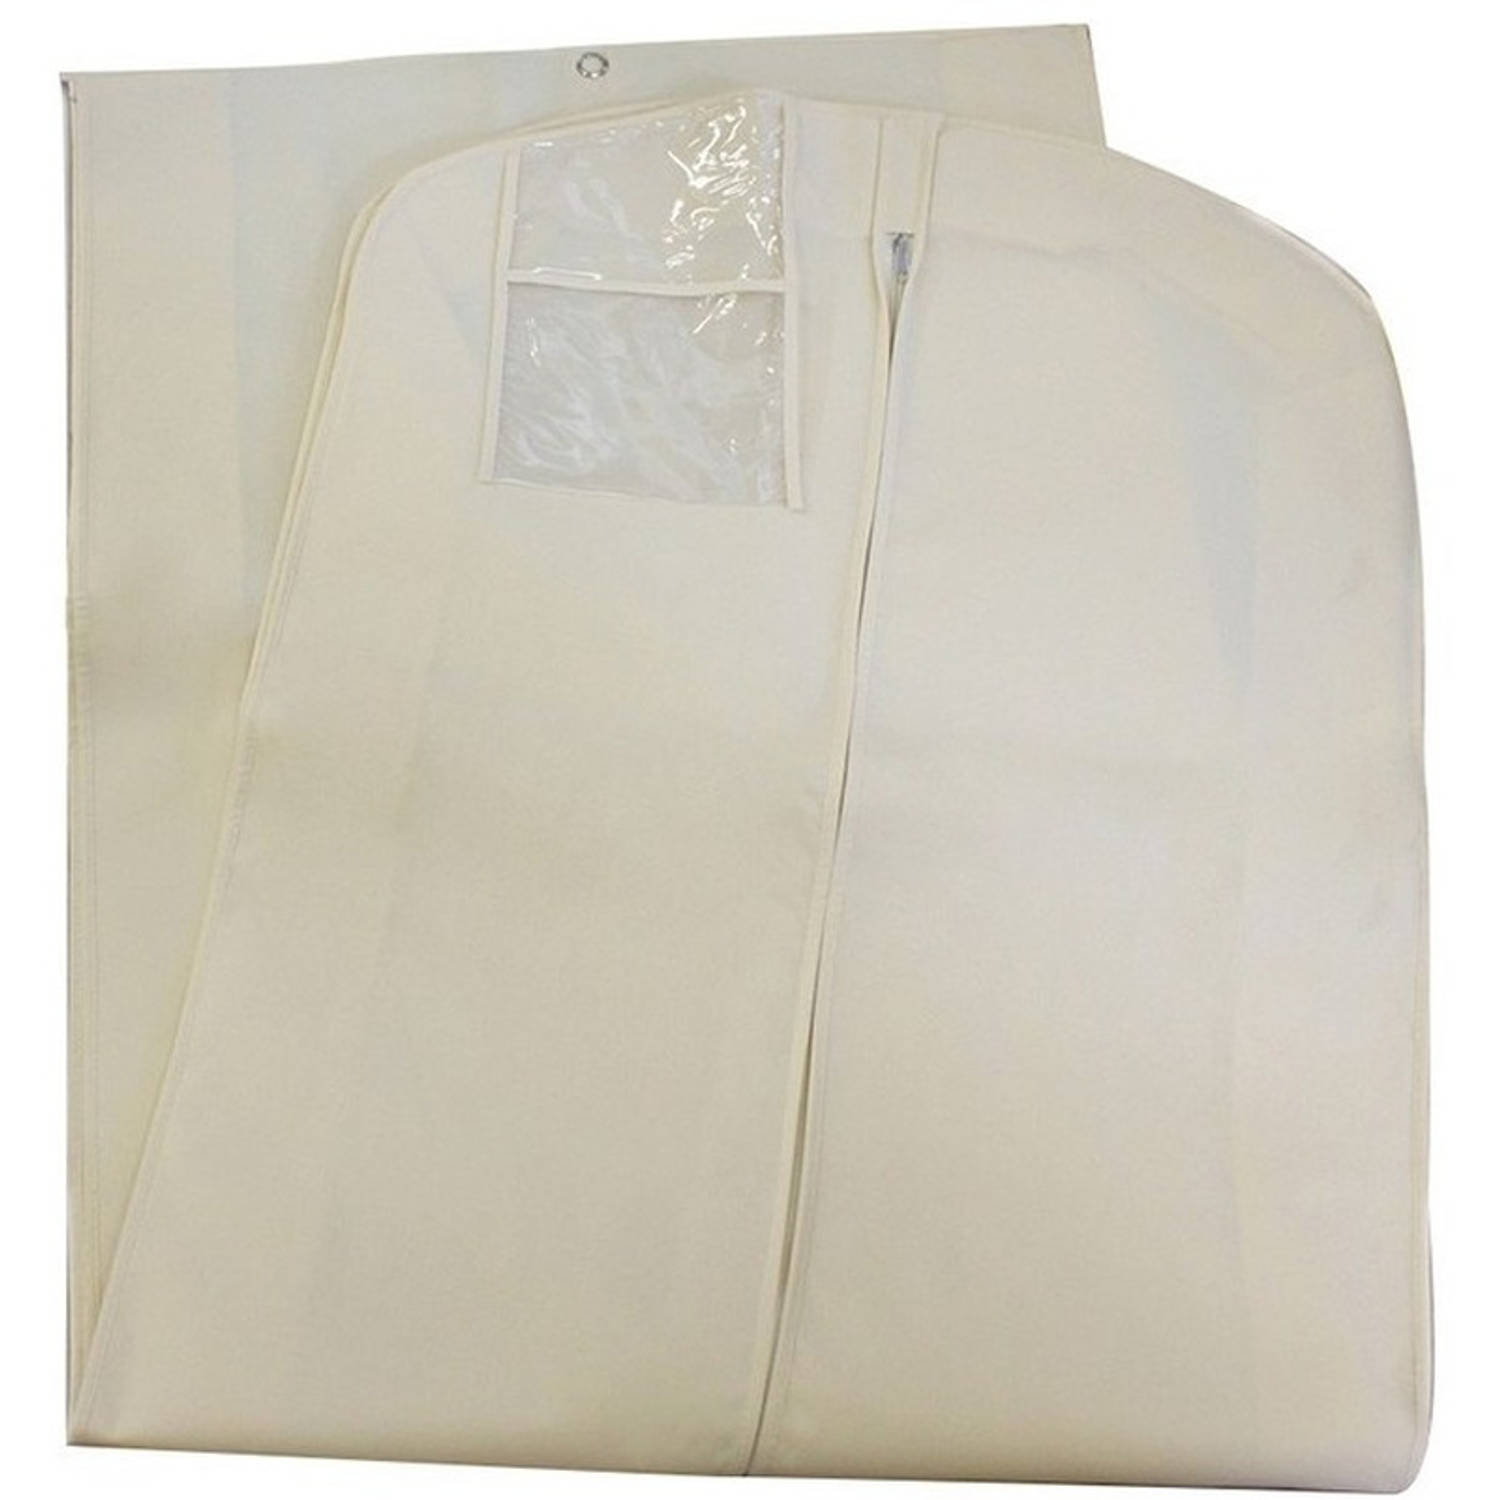 Witte bruidsjurk opberghoes/kledinghoes 65 x 180 cm - Kledinghoezen